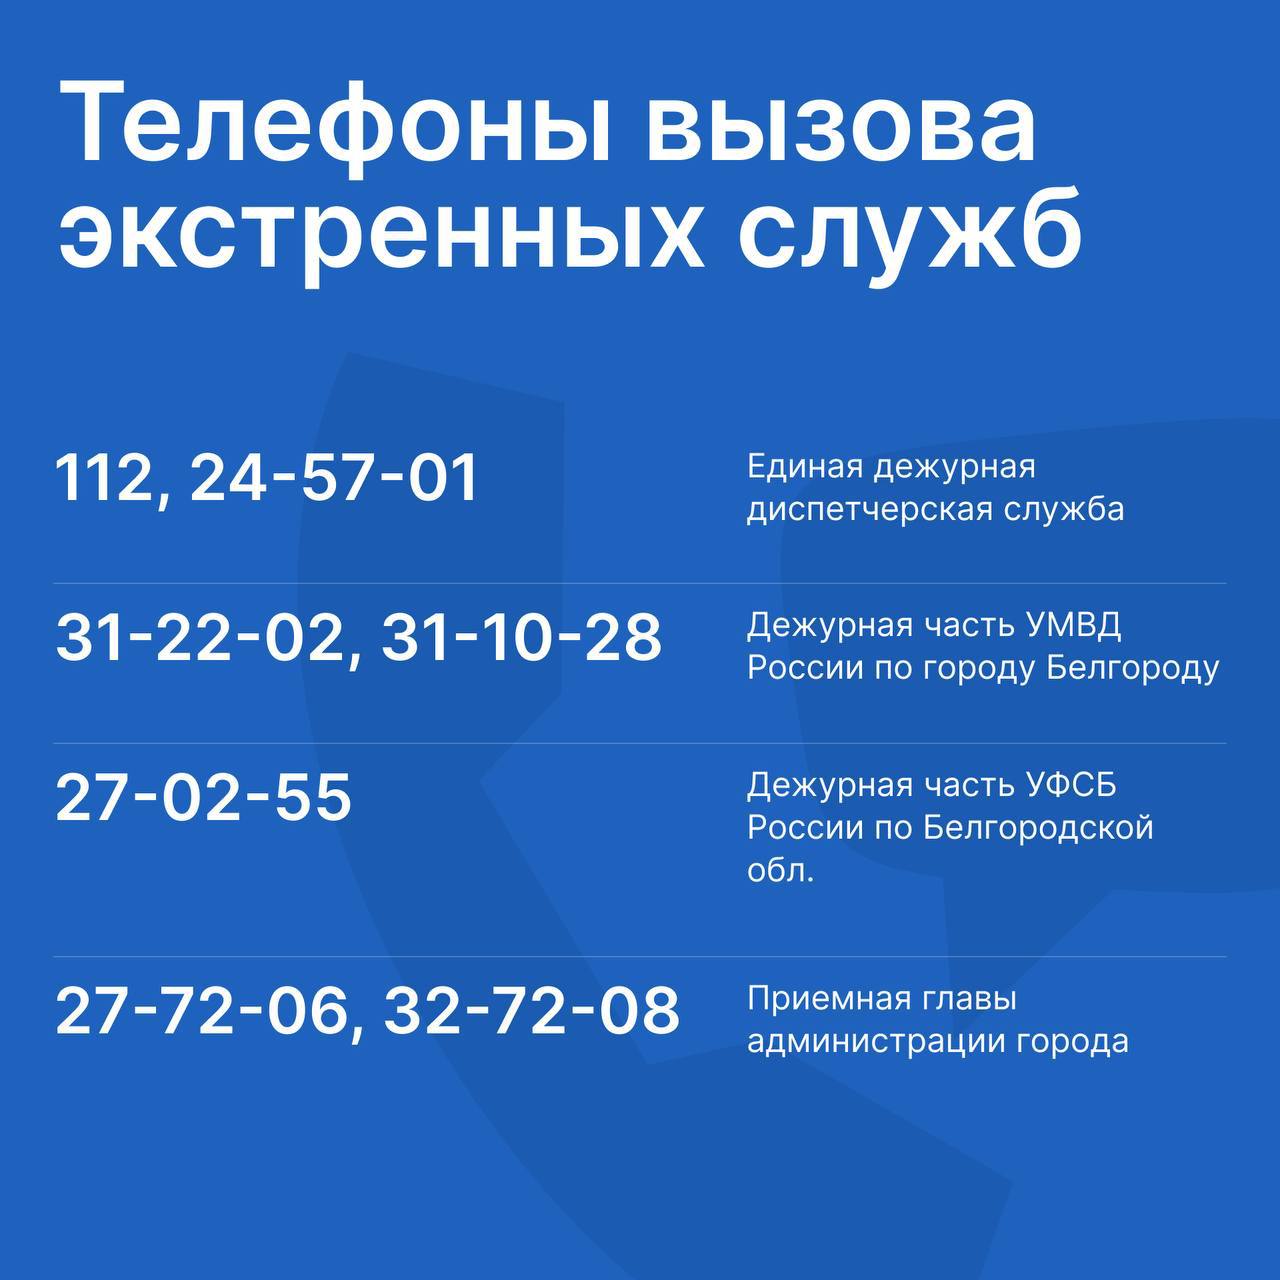 Телефоны экстренных служб в Белгороде.